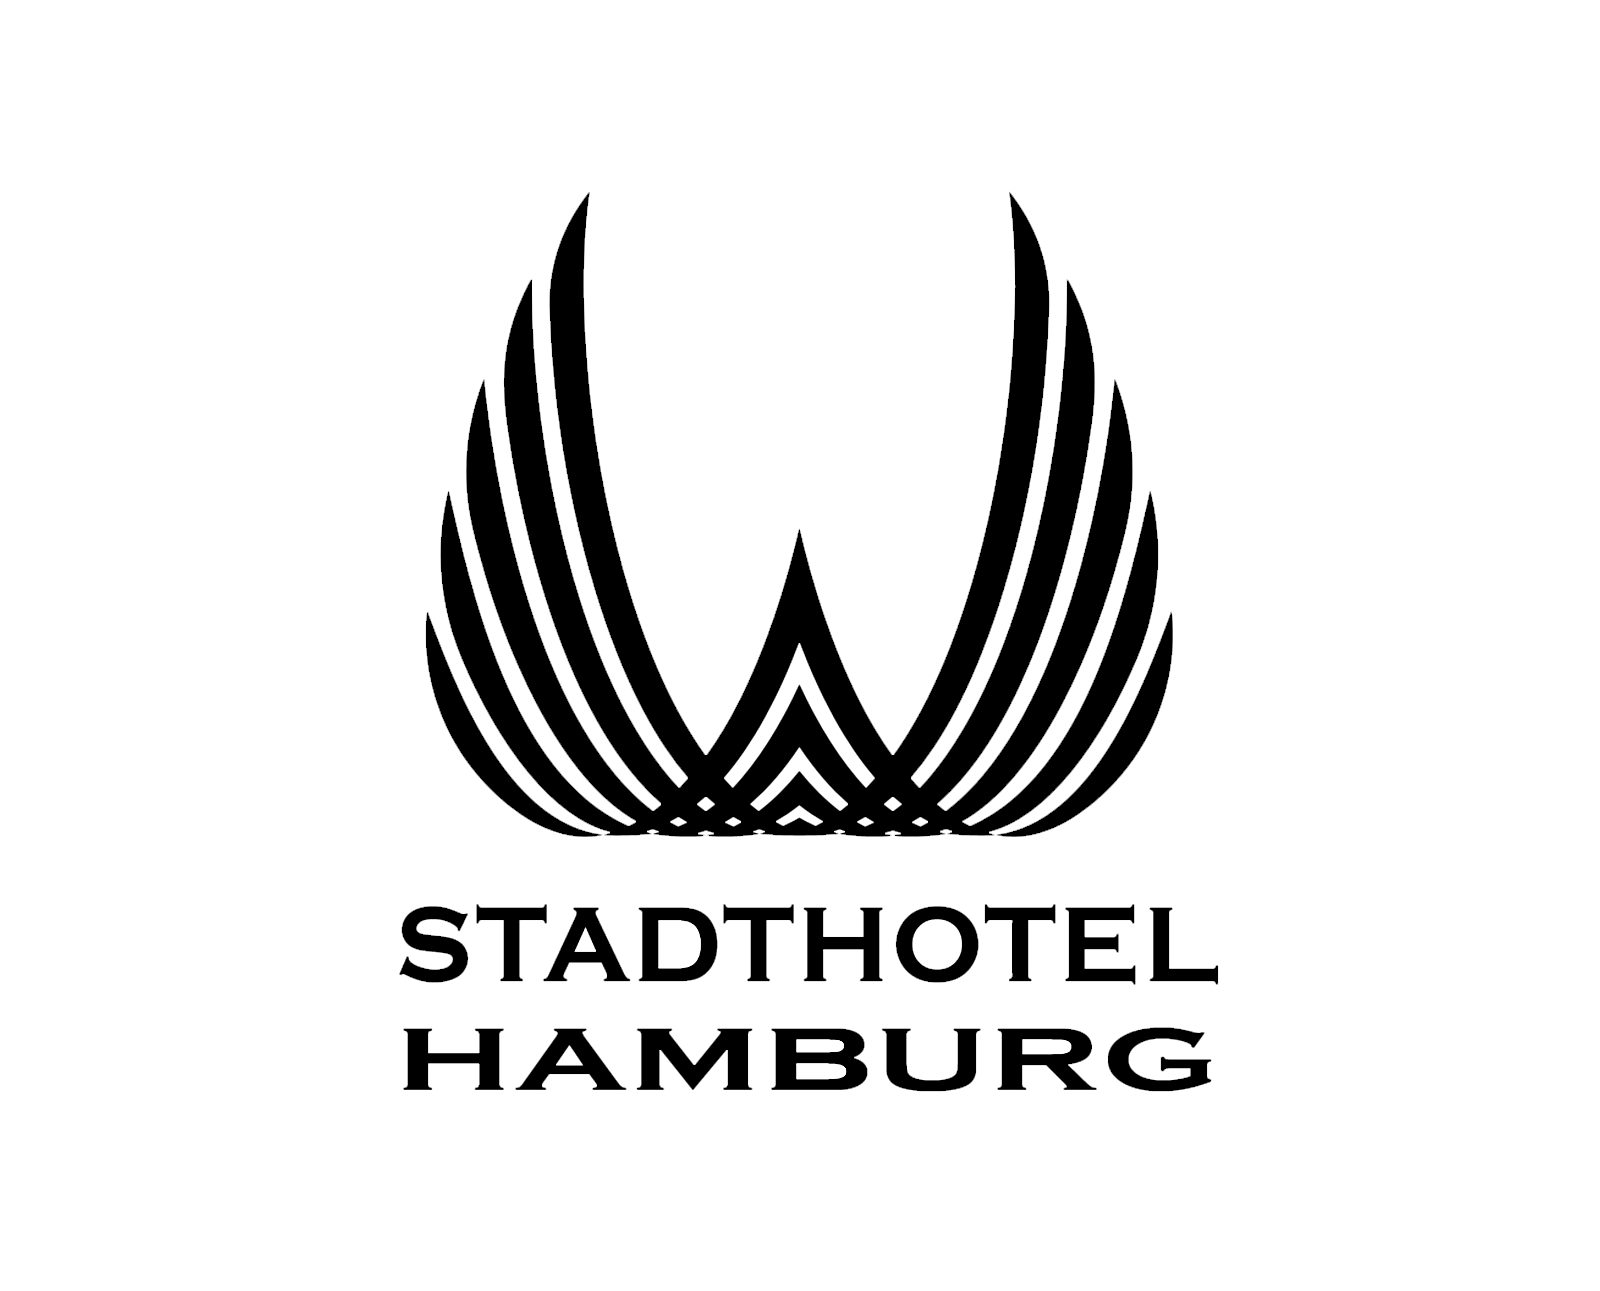 stadthotel-hamburg-logo-referenz-ultim8media-black